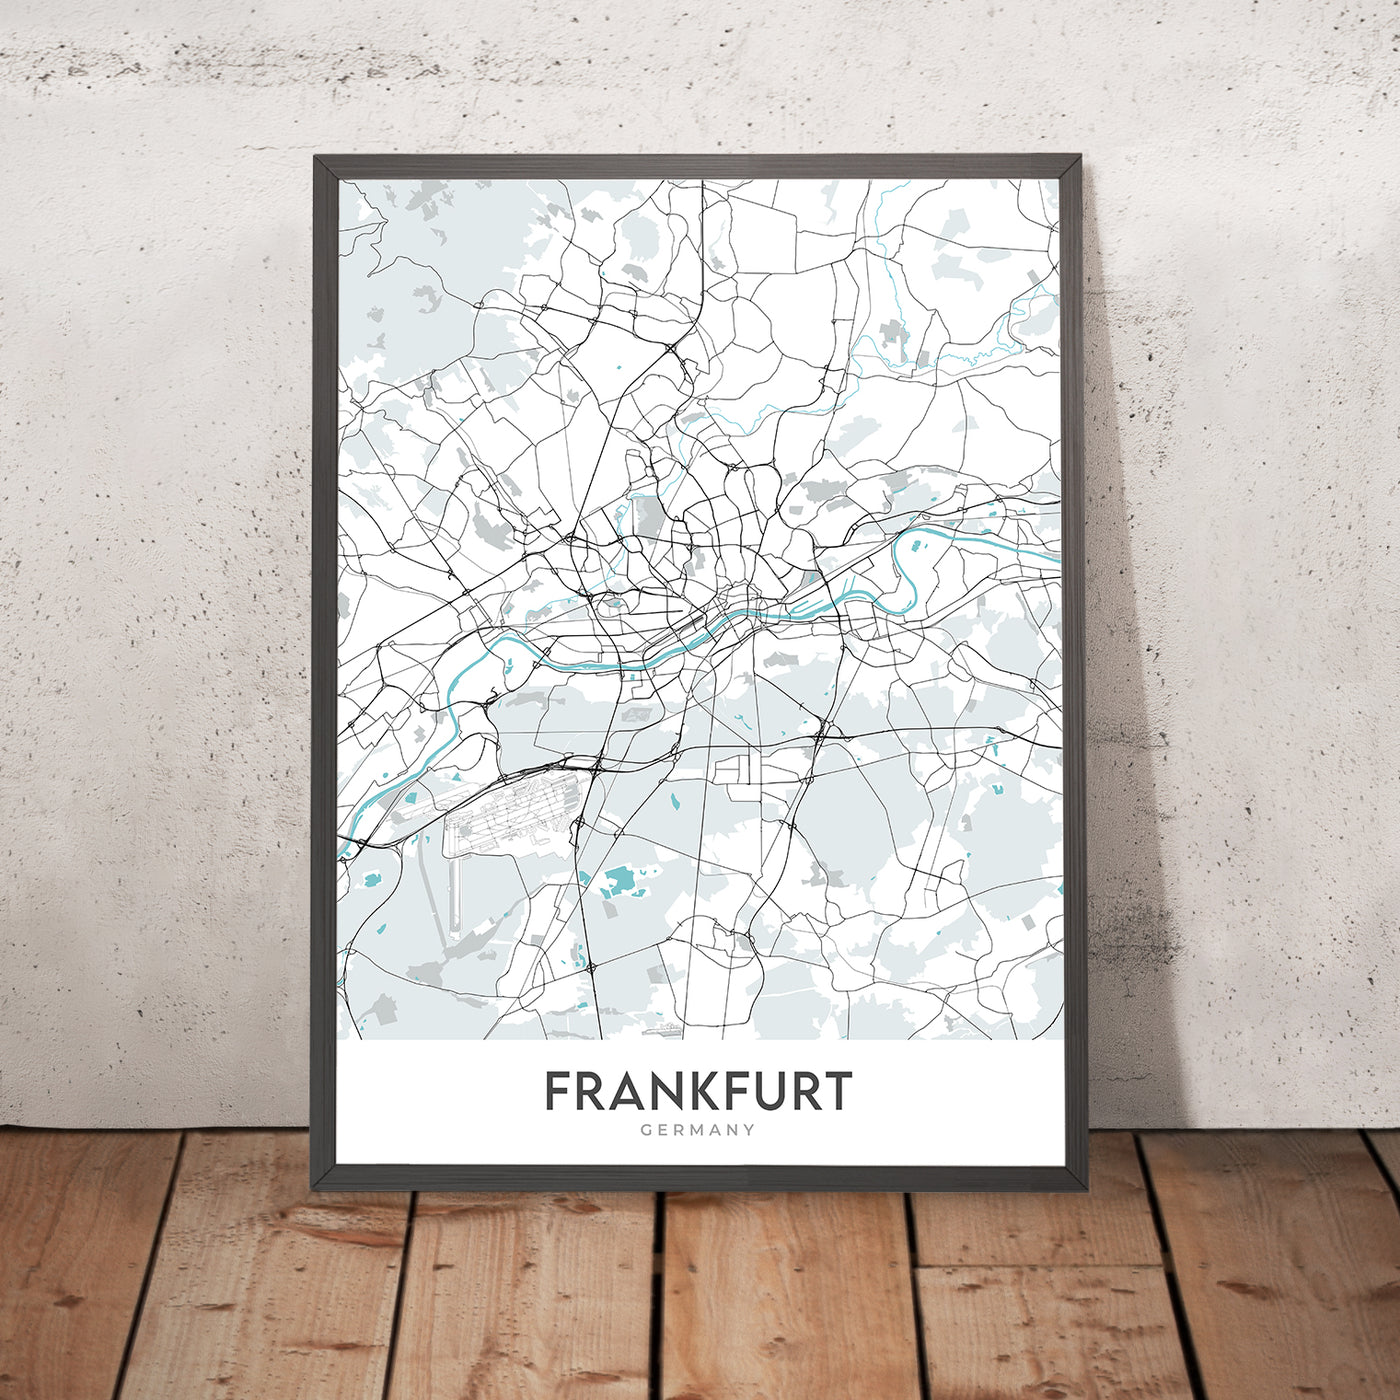 Plan de la ville moderne de Francfort, Allemagne : Bahnhofsviertel, tour de la Commerzbank, cathédrale de Francfort, rivière Main, Sachsenhausen